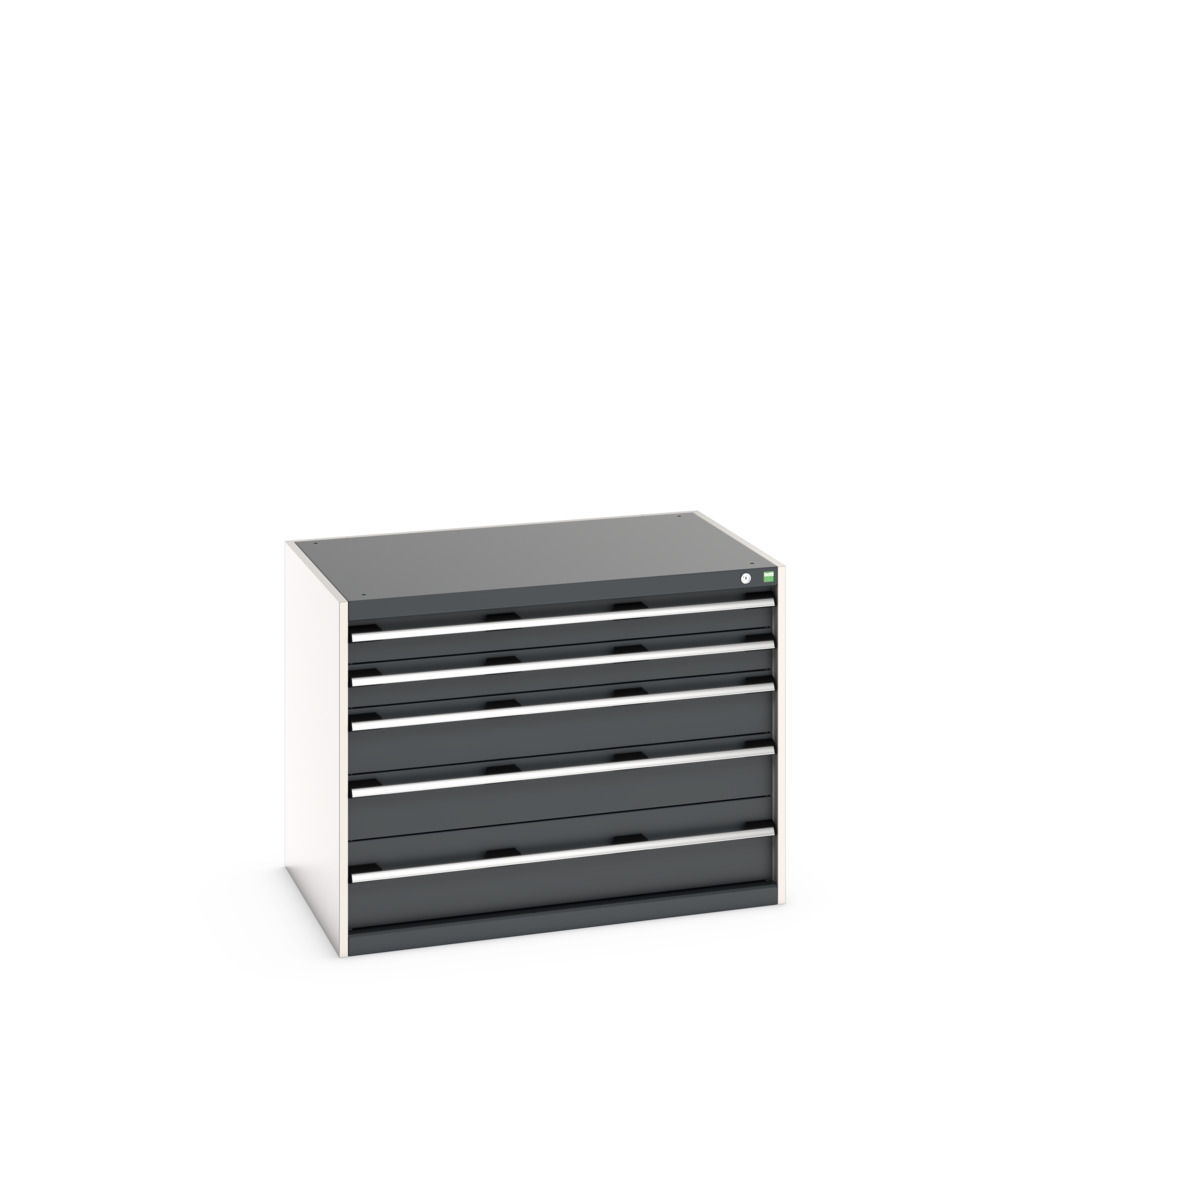 40029009.19V - cubio drawer cabinet